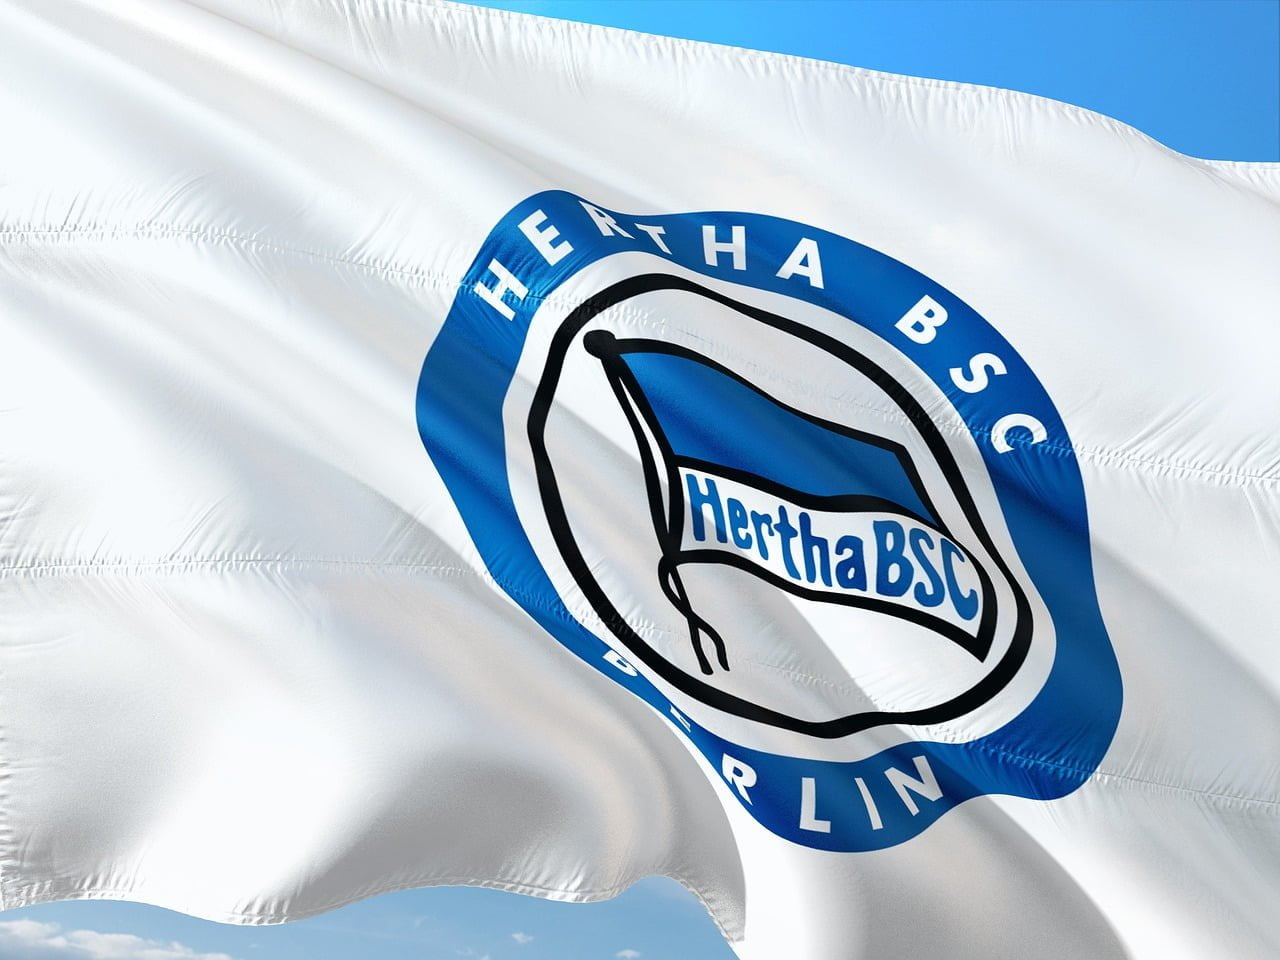 Zwi­schen Betriebs­rat und Beleg­schafts­aus­schuss: Her­tha BSC im Fokus